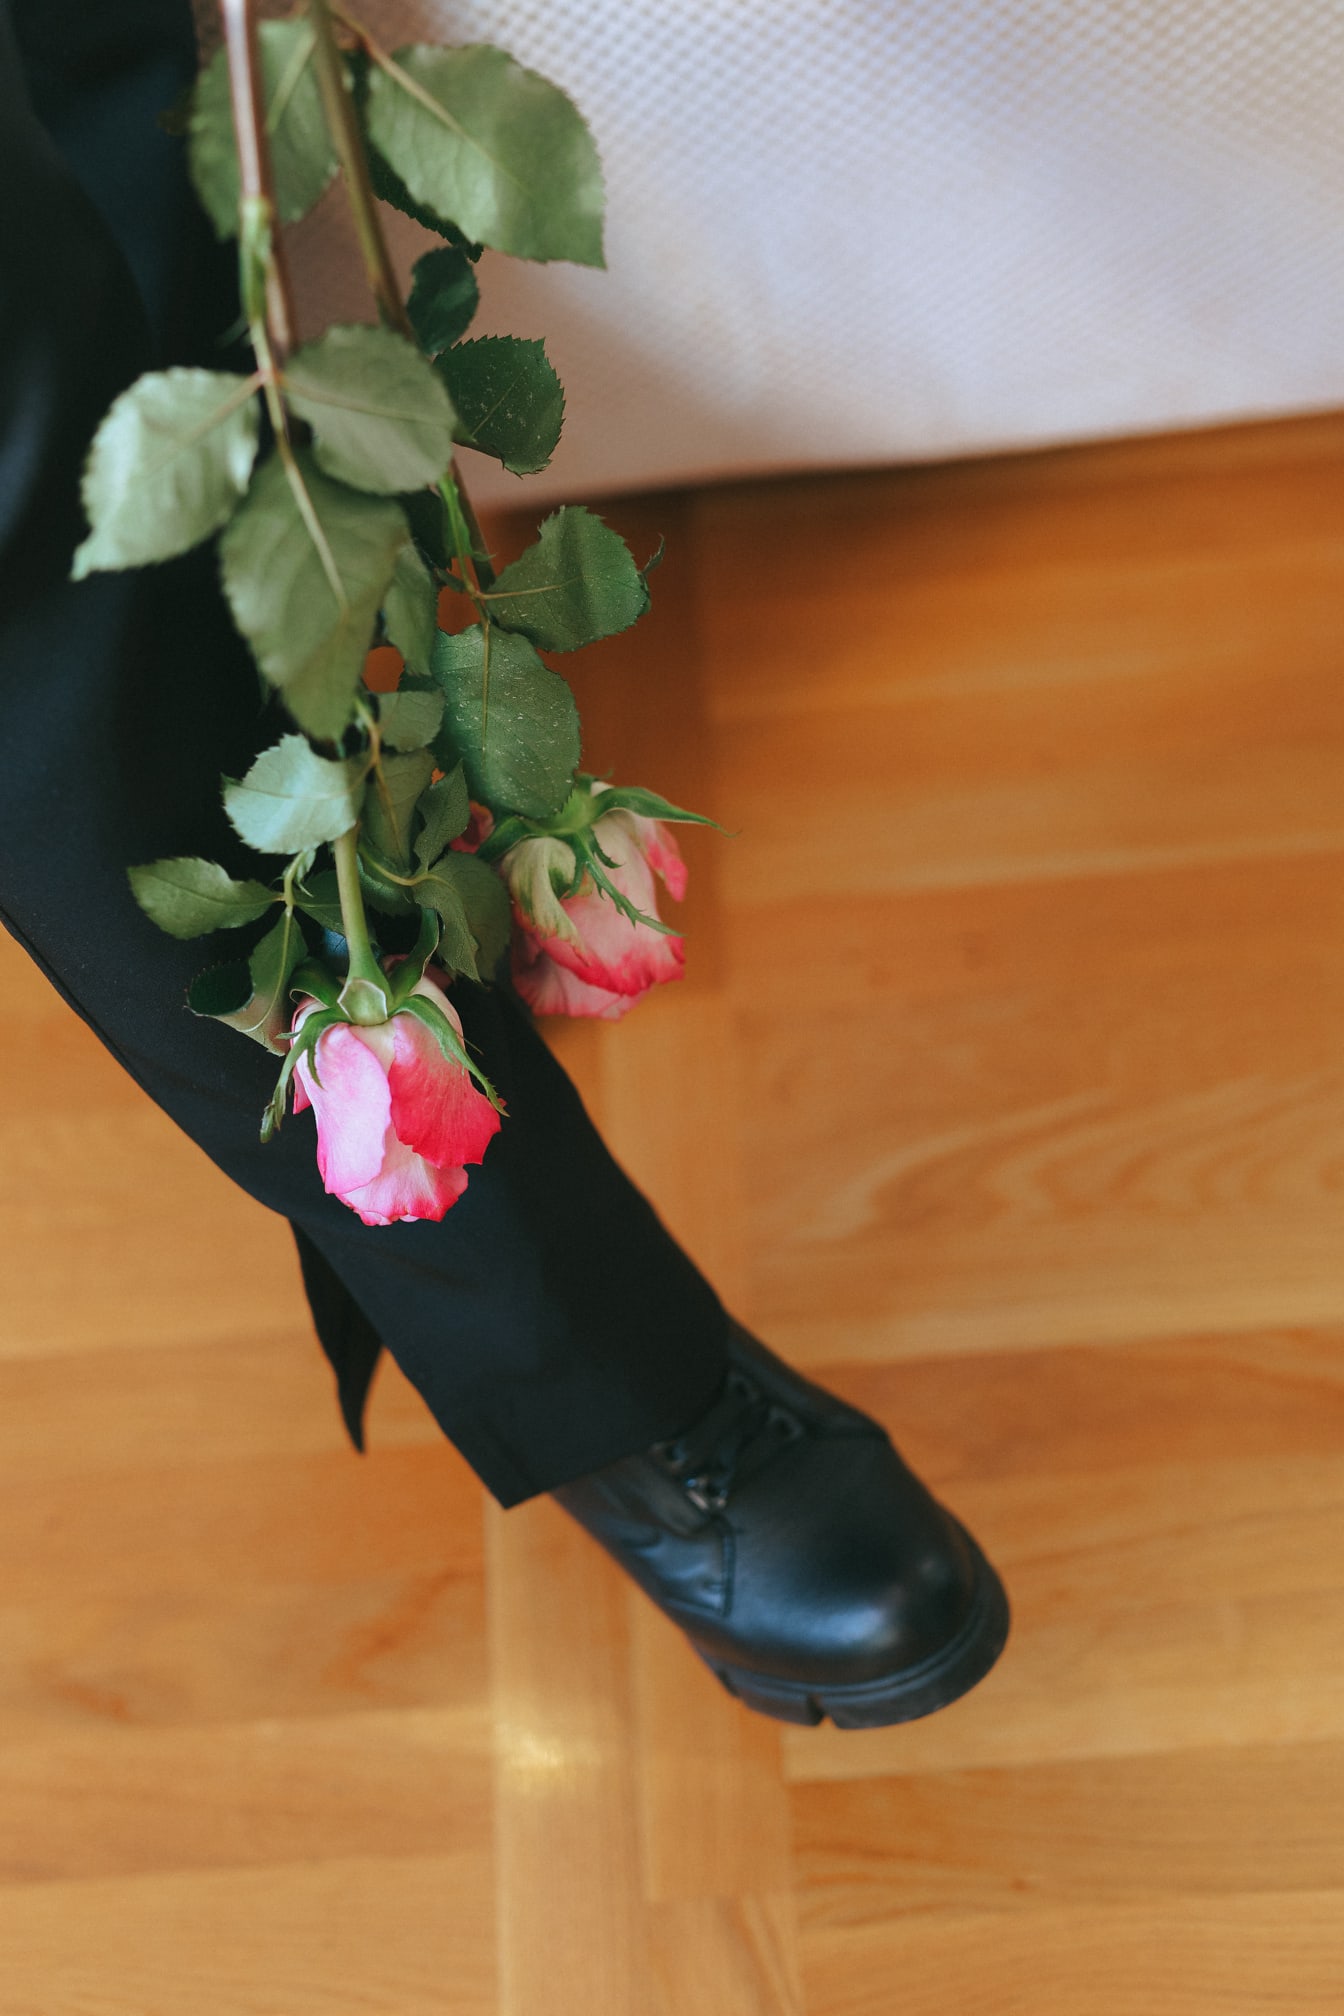 Chân của người với một bó hoa hồng hồng